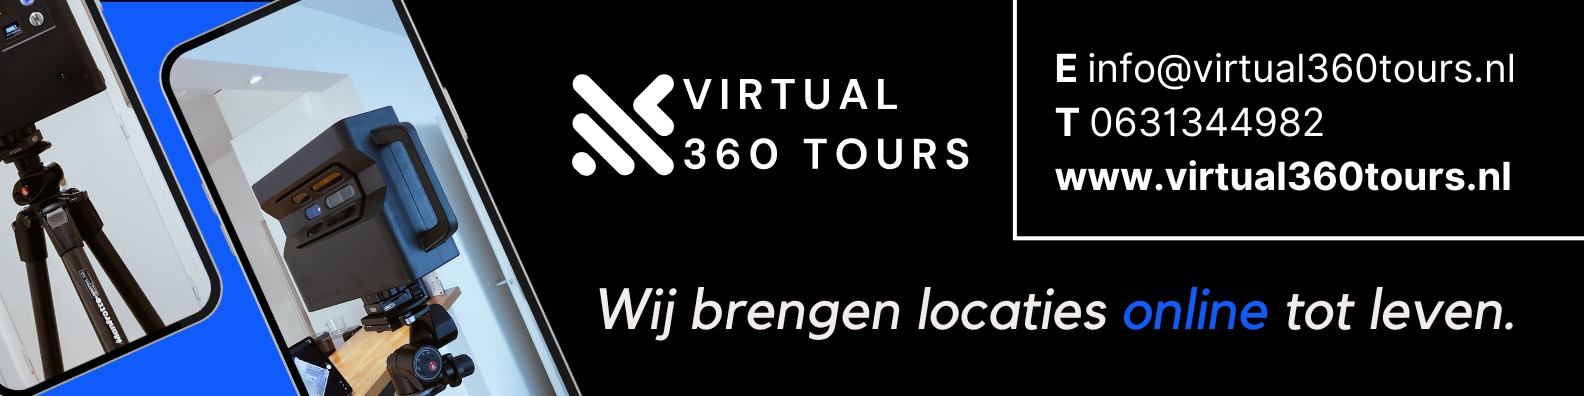 Virtual 360 Tours